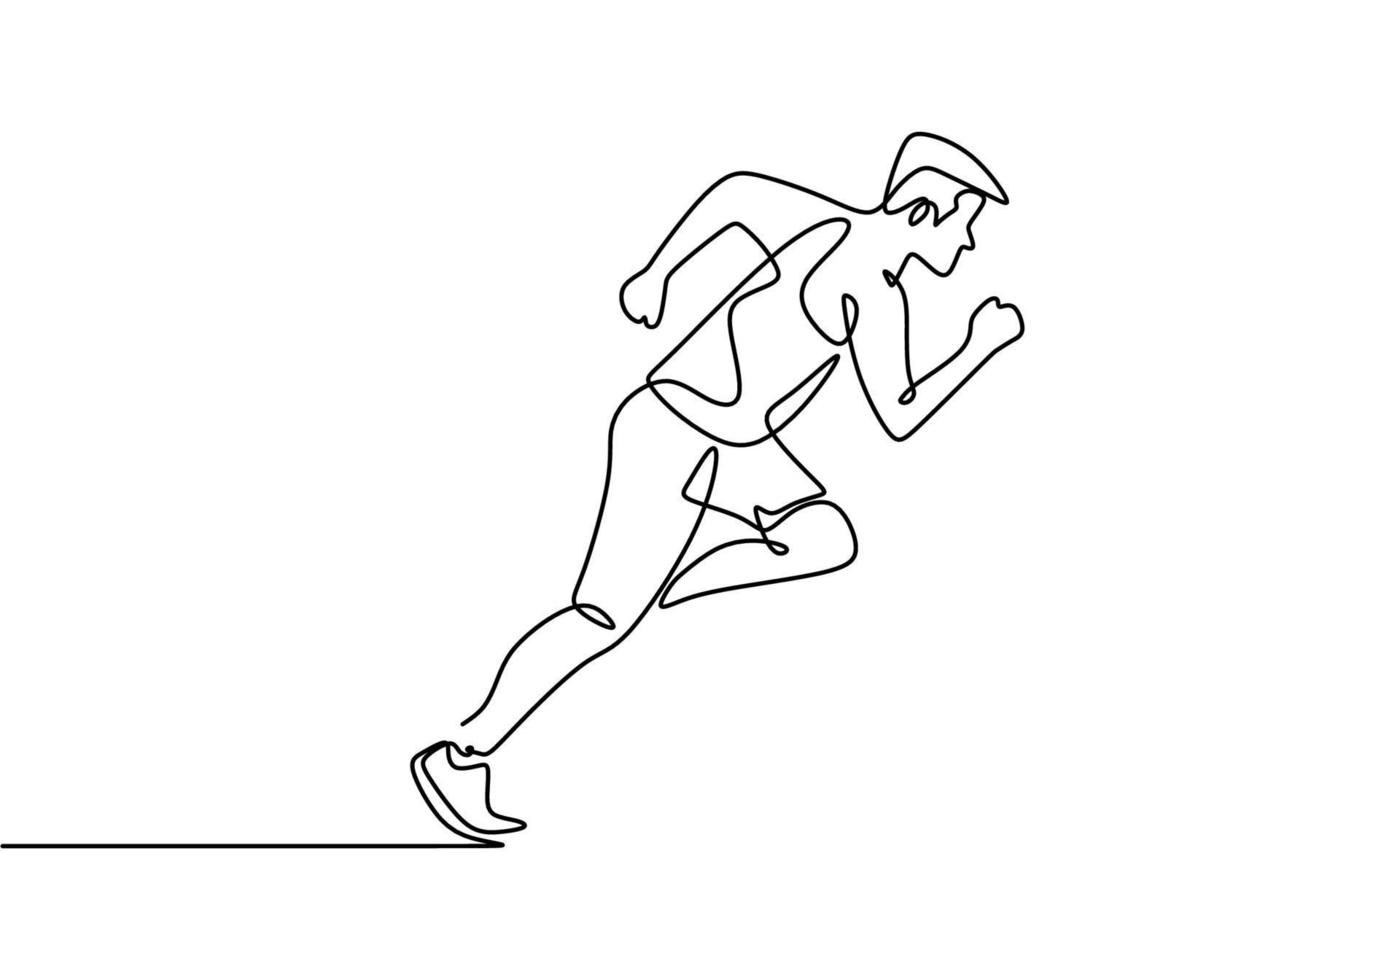 desenho de linha contínua do homem do esporte fazendo exercício. pessoa correndo. vetor